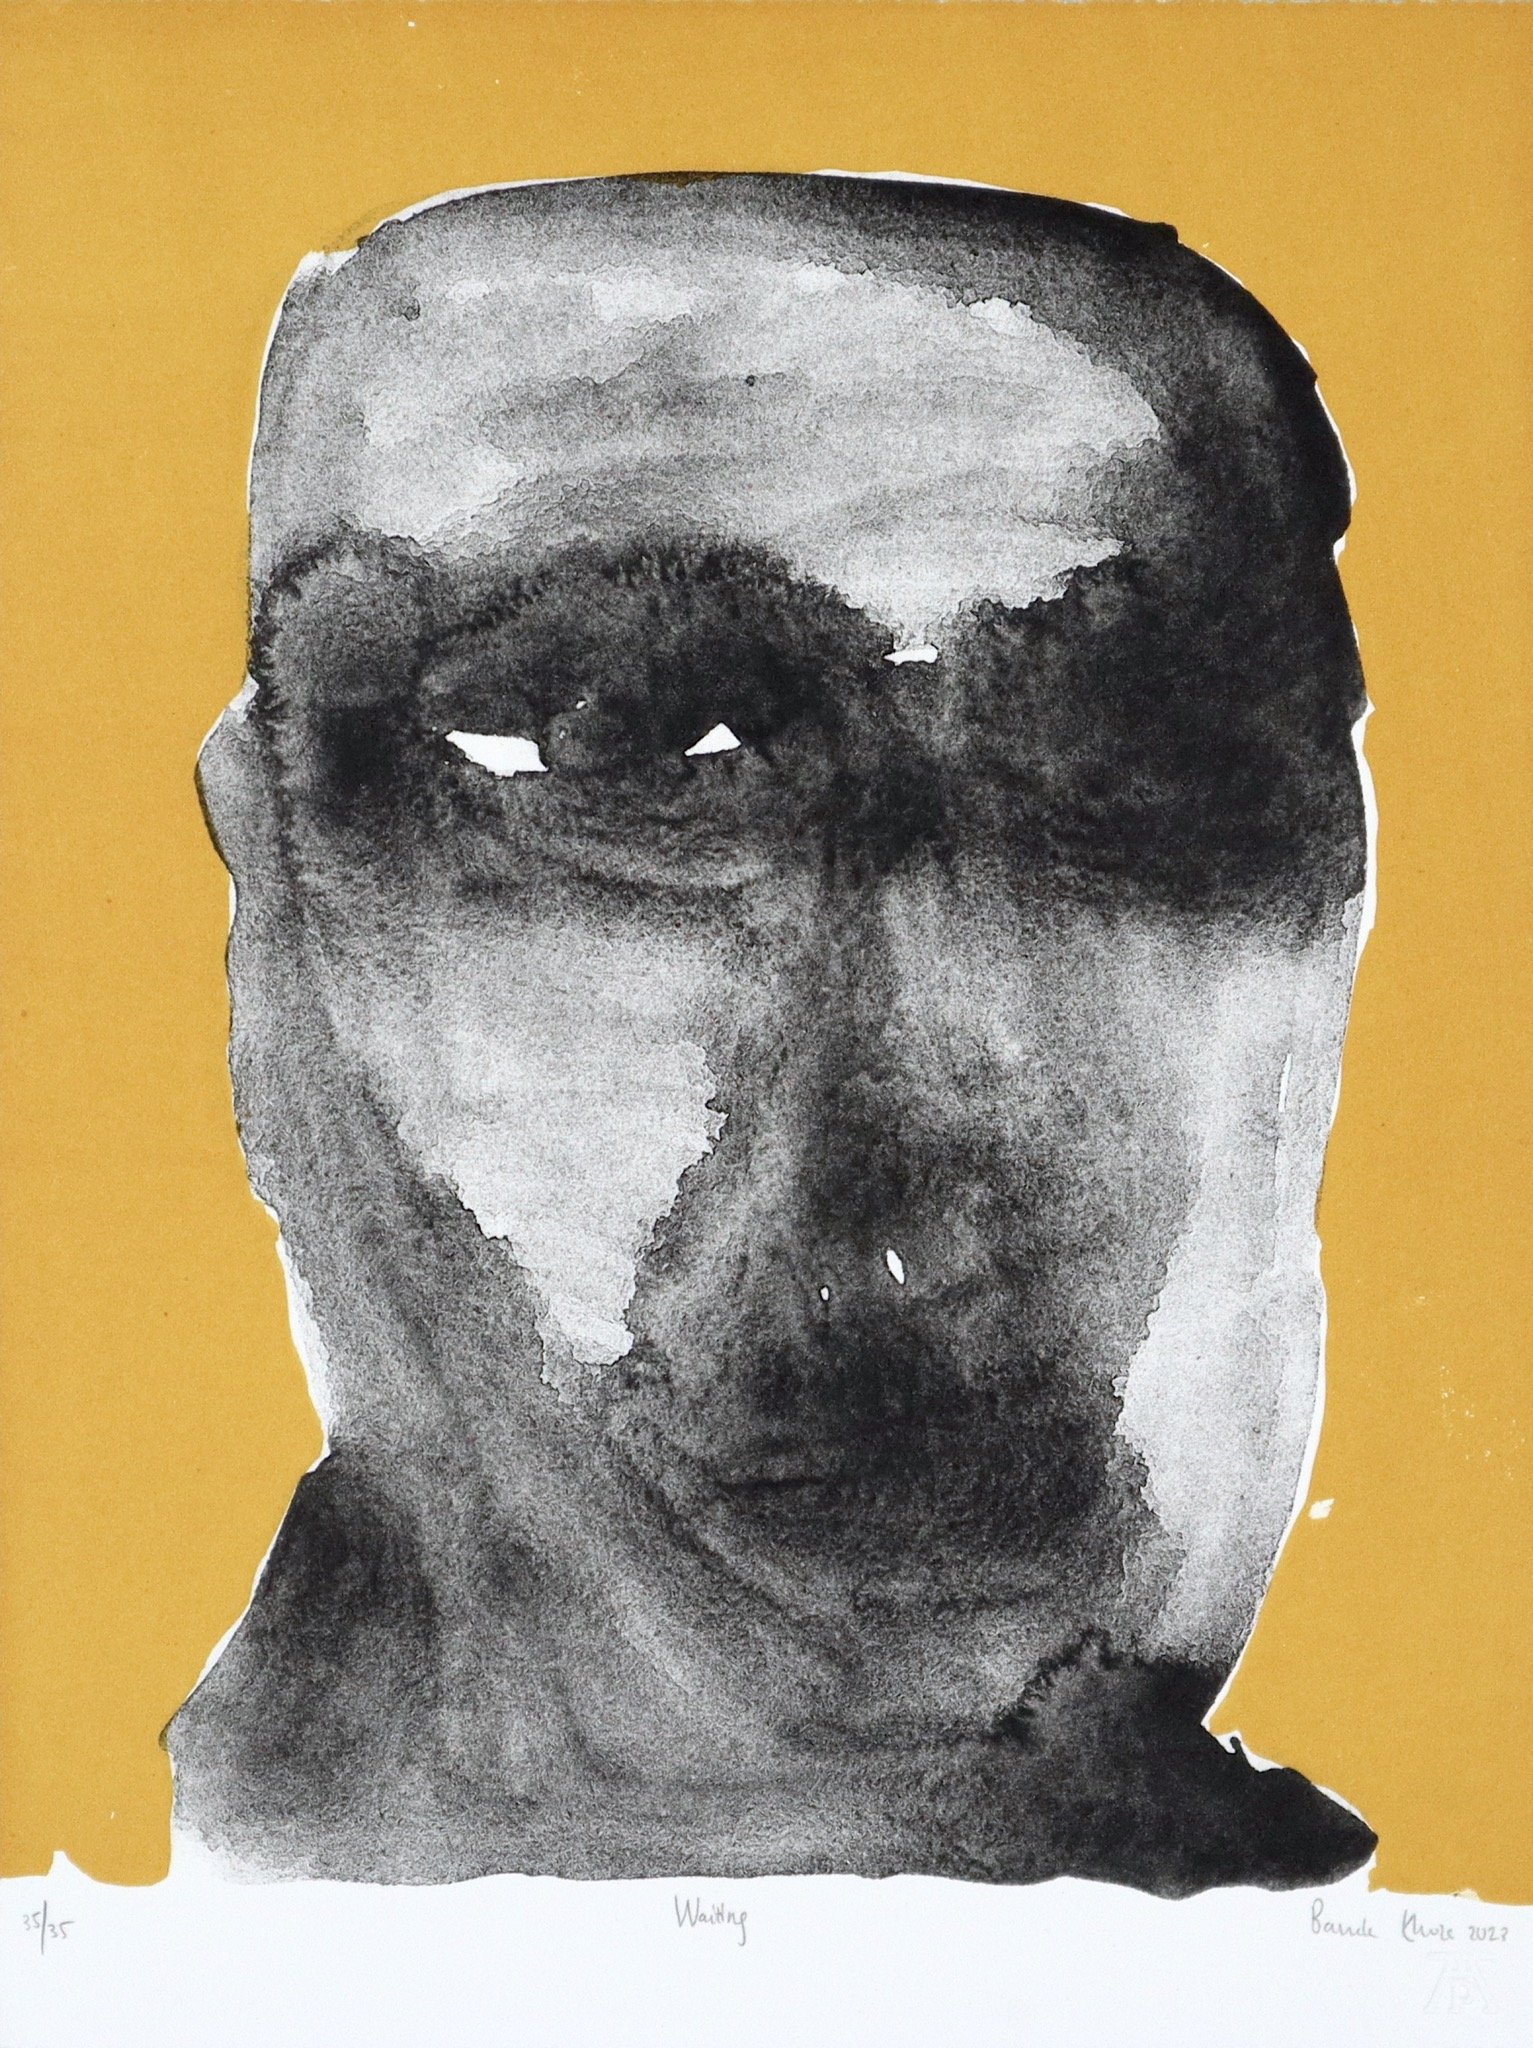 Banele Khoza portrait of a man's head